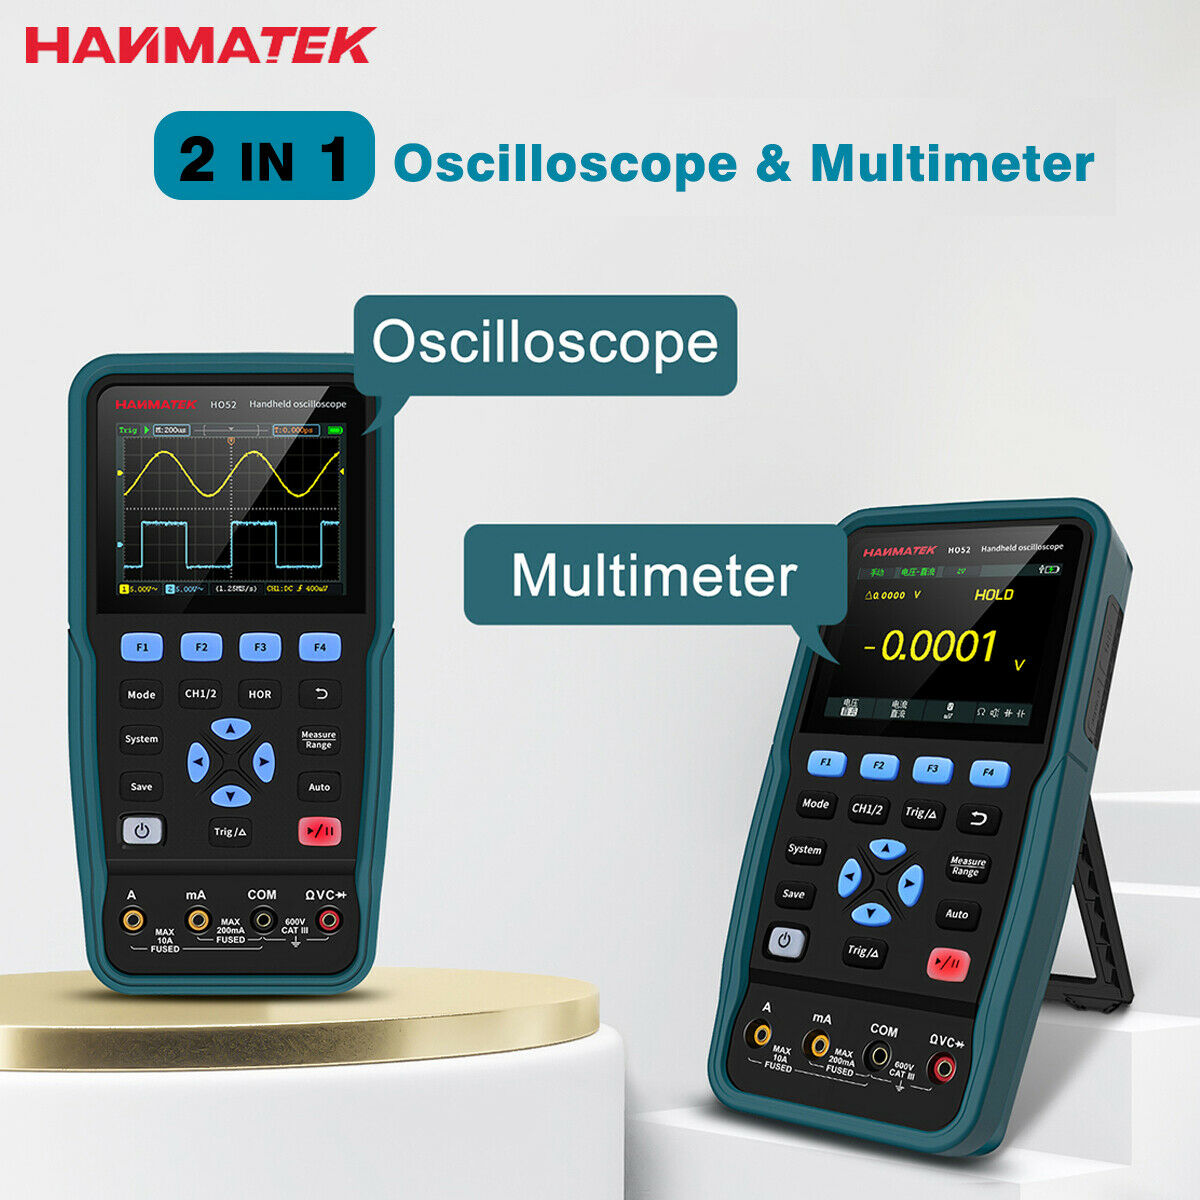 HANMATEK 2 Channel 2 IN 1 Digital Handheld Oscilloscope Multimeter Tester 50MHz